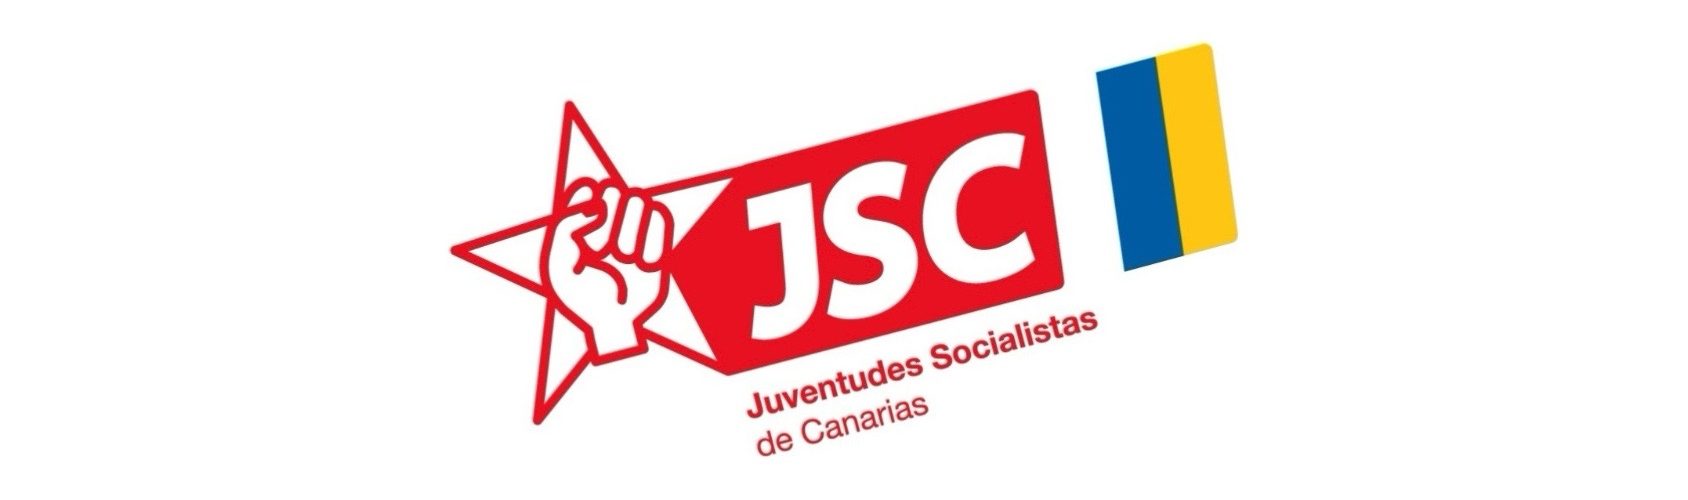 Nuevo logo de las Juventudes Socialistas de Canarias